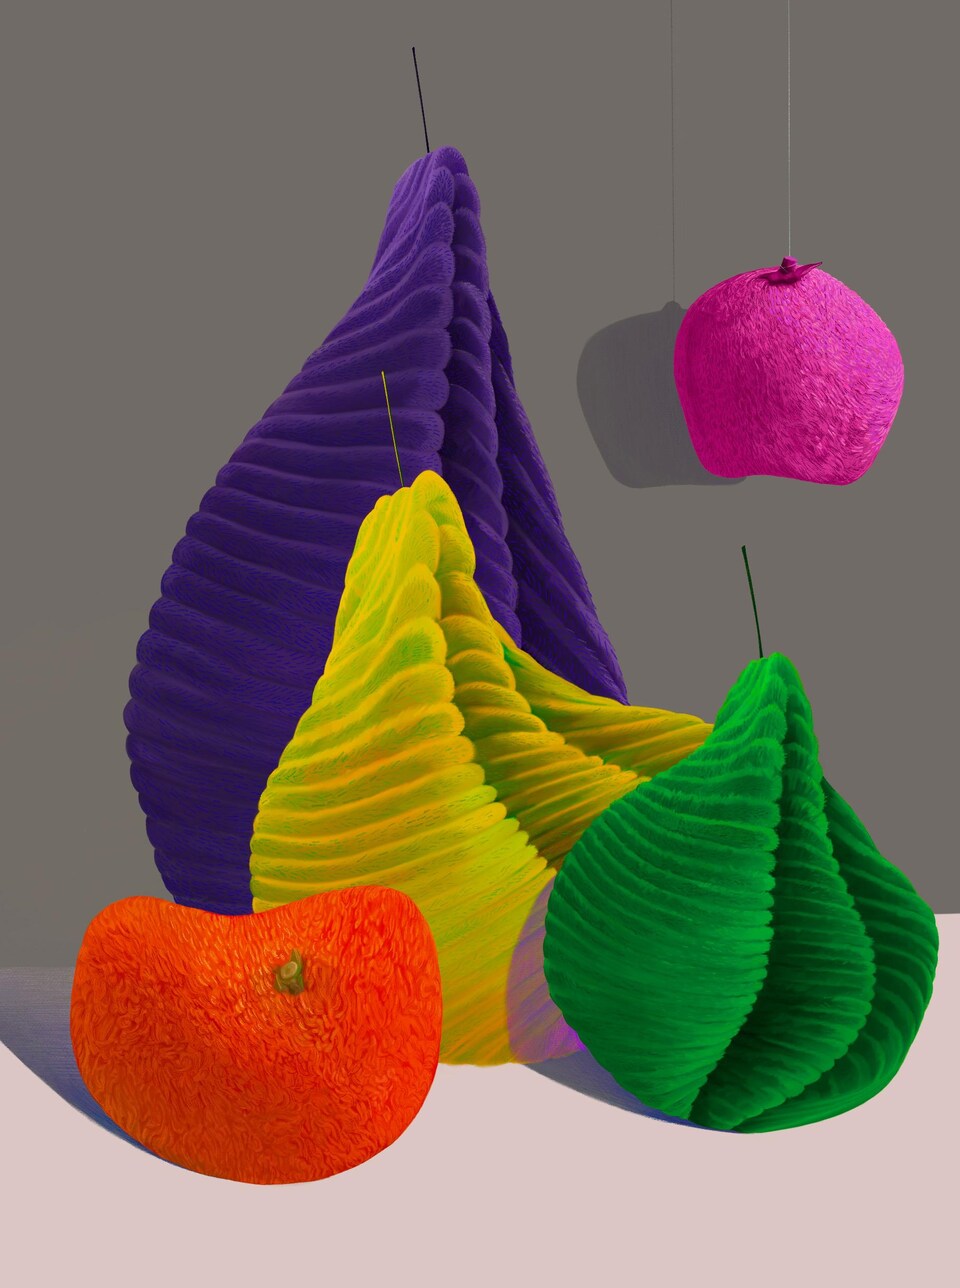 Un tableau représentant des fruits qui ont des textures semblables à celles de tissus. 
